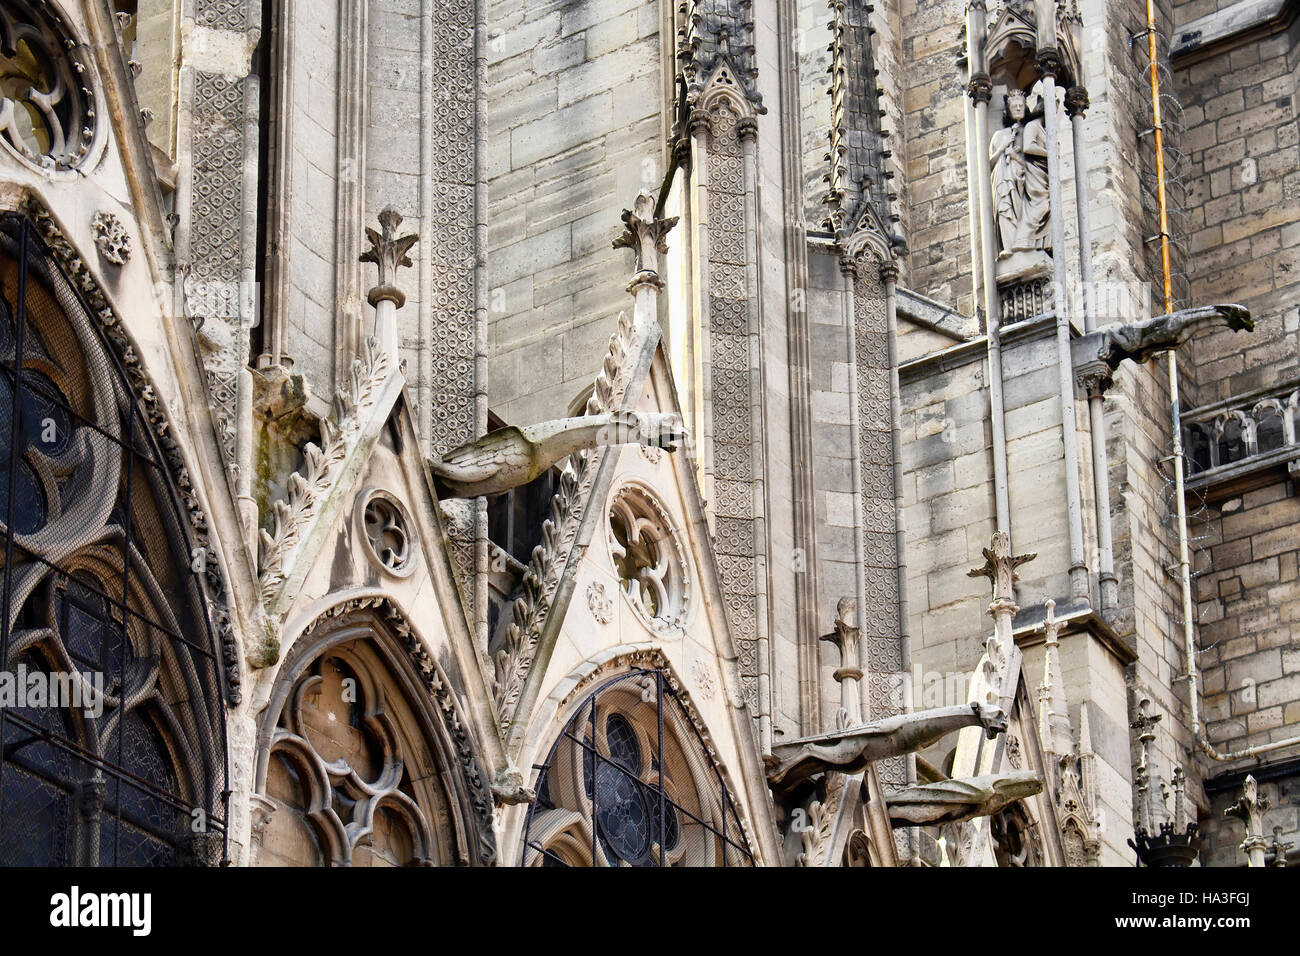 Vista ravvicinata della cattedrale di Notre Dame a Parigi. Sculture e statue sono in vista. Torreggianti, duecentesca Cattedrale con archi rampanti & gargoy Foto Stock